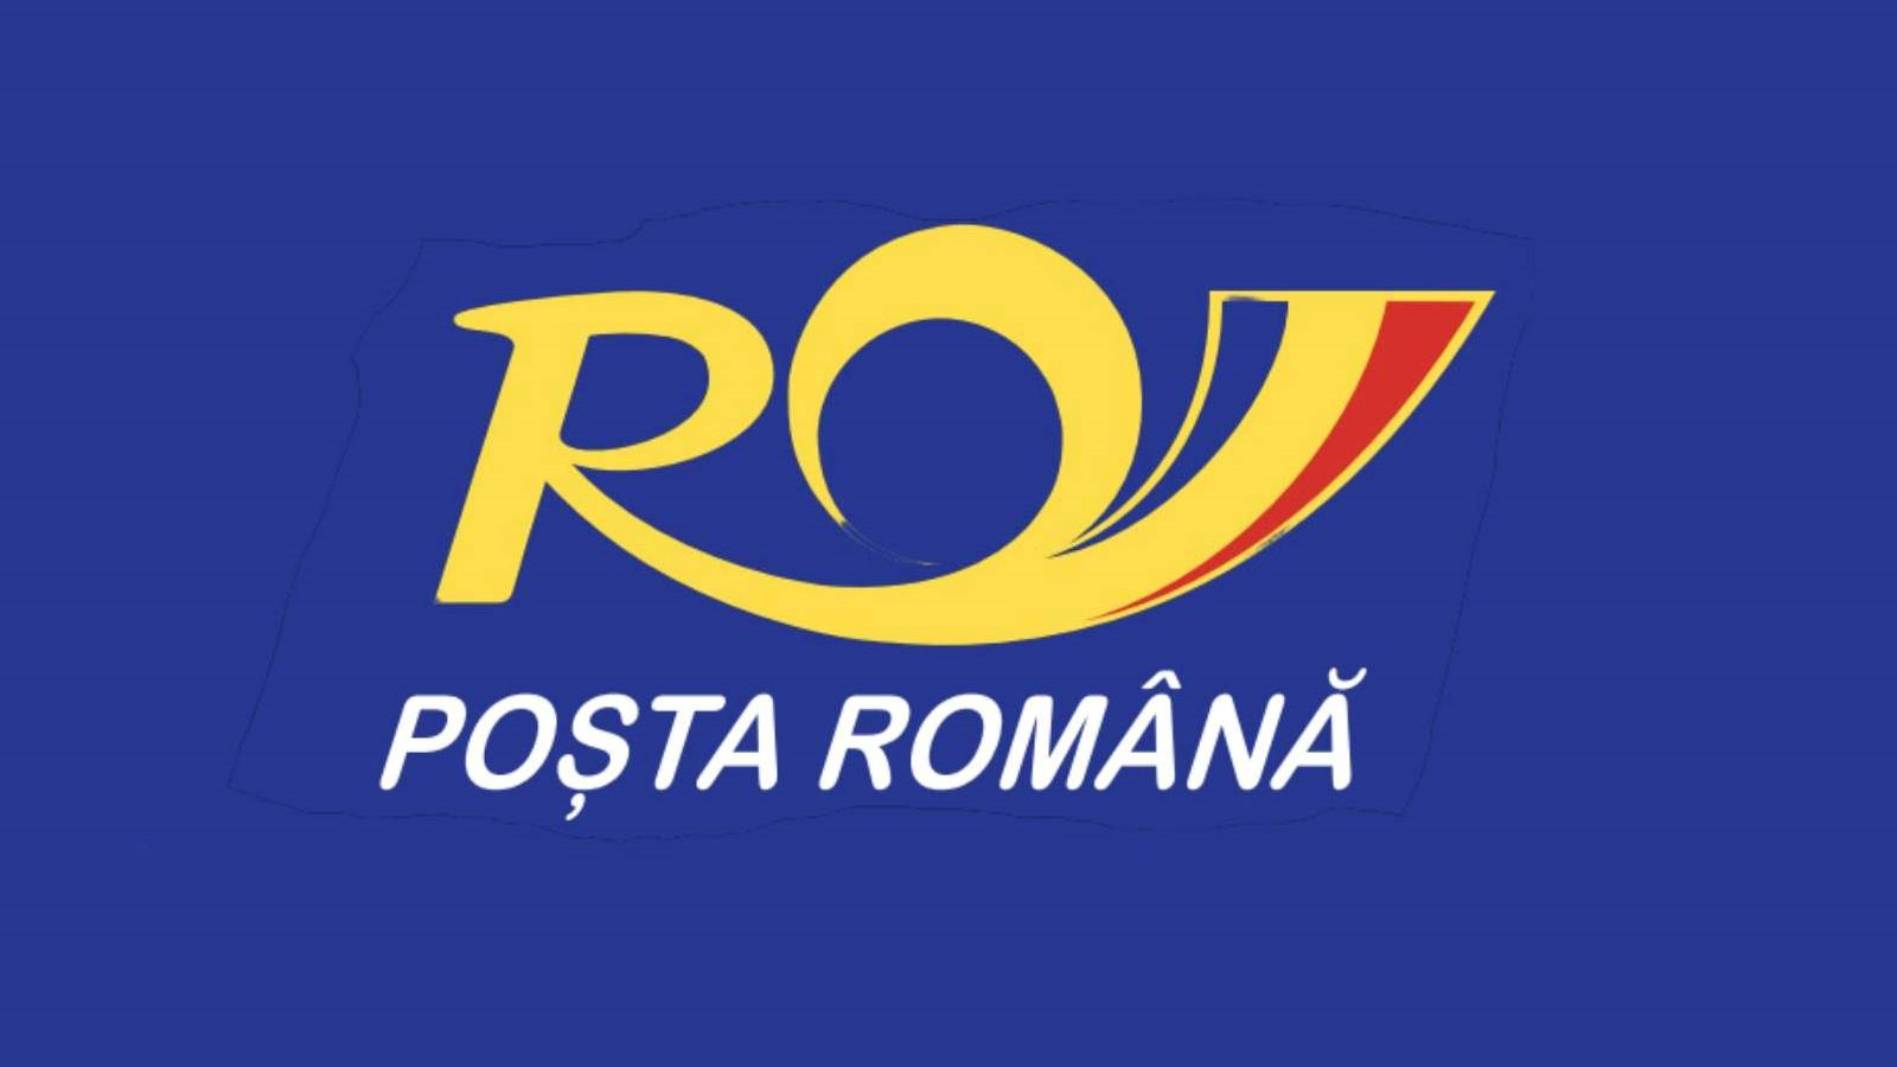 Romanian posti ilmoittaa energiakorttien voimassaolon jatkamisesta